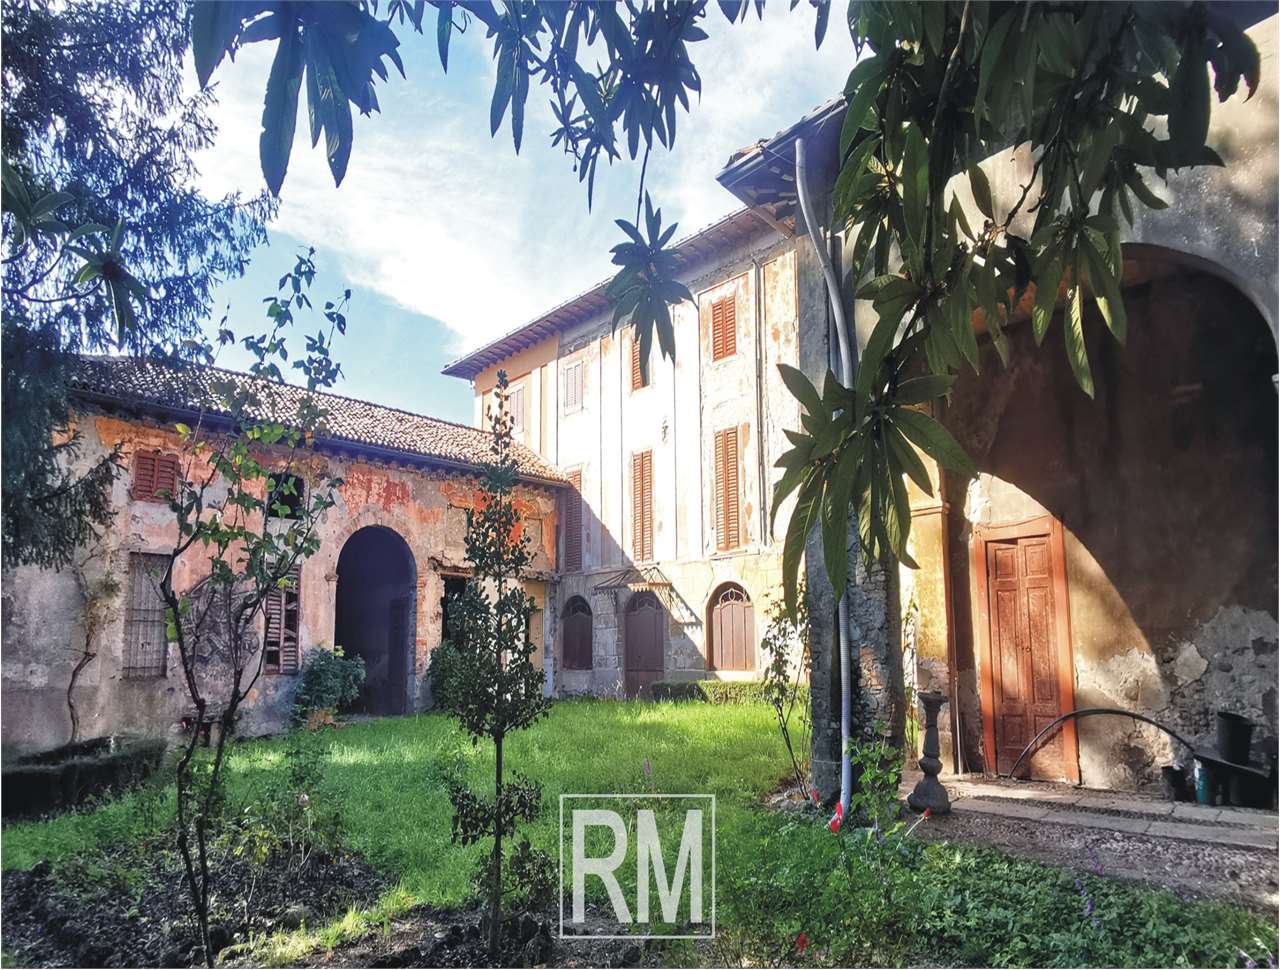 Villa unifamiliare in vendita, Almenno San Salvatore